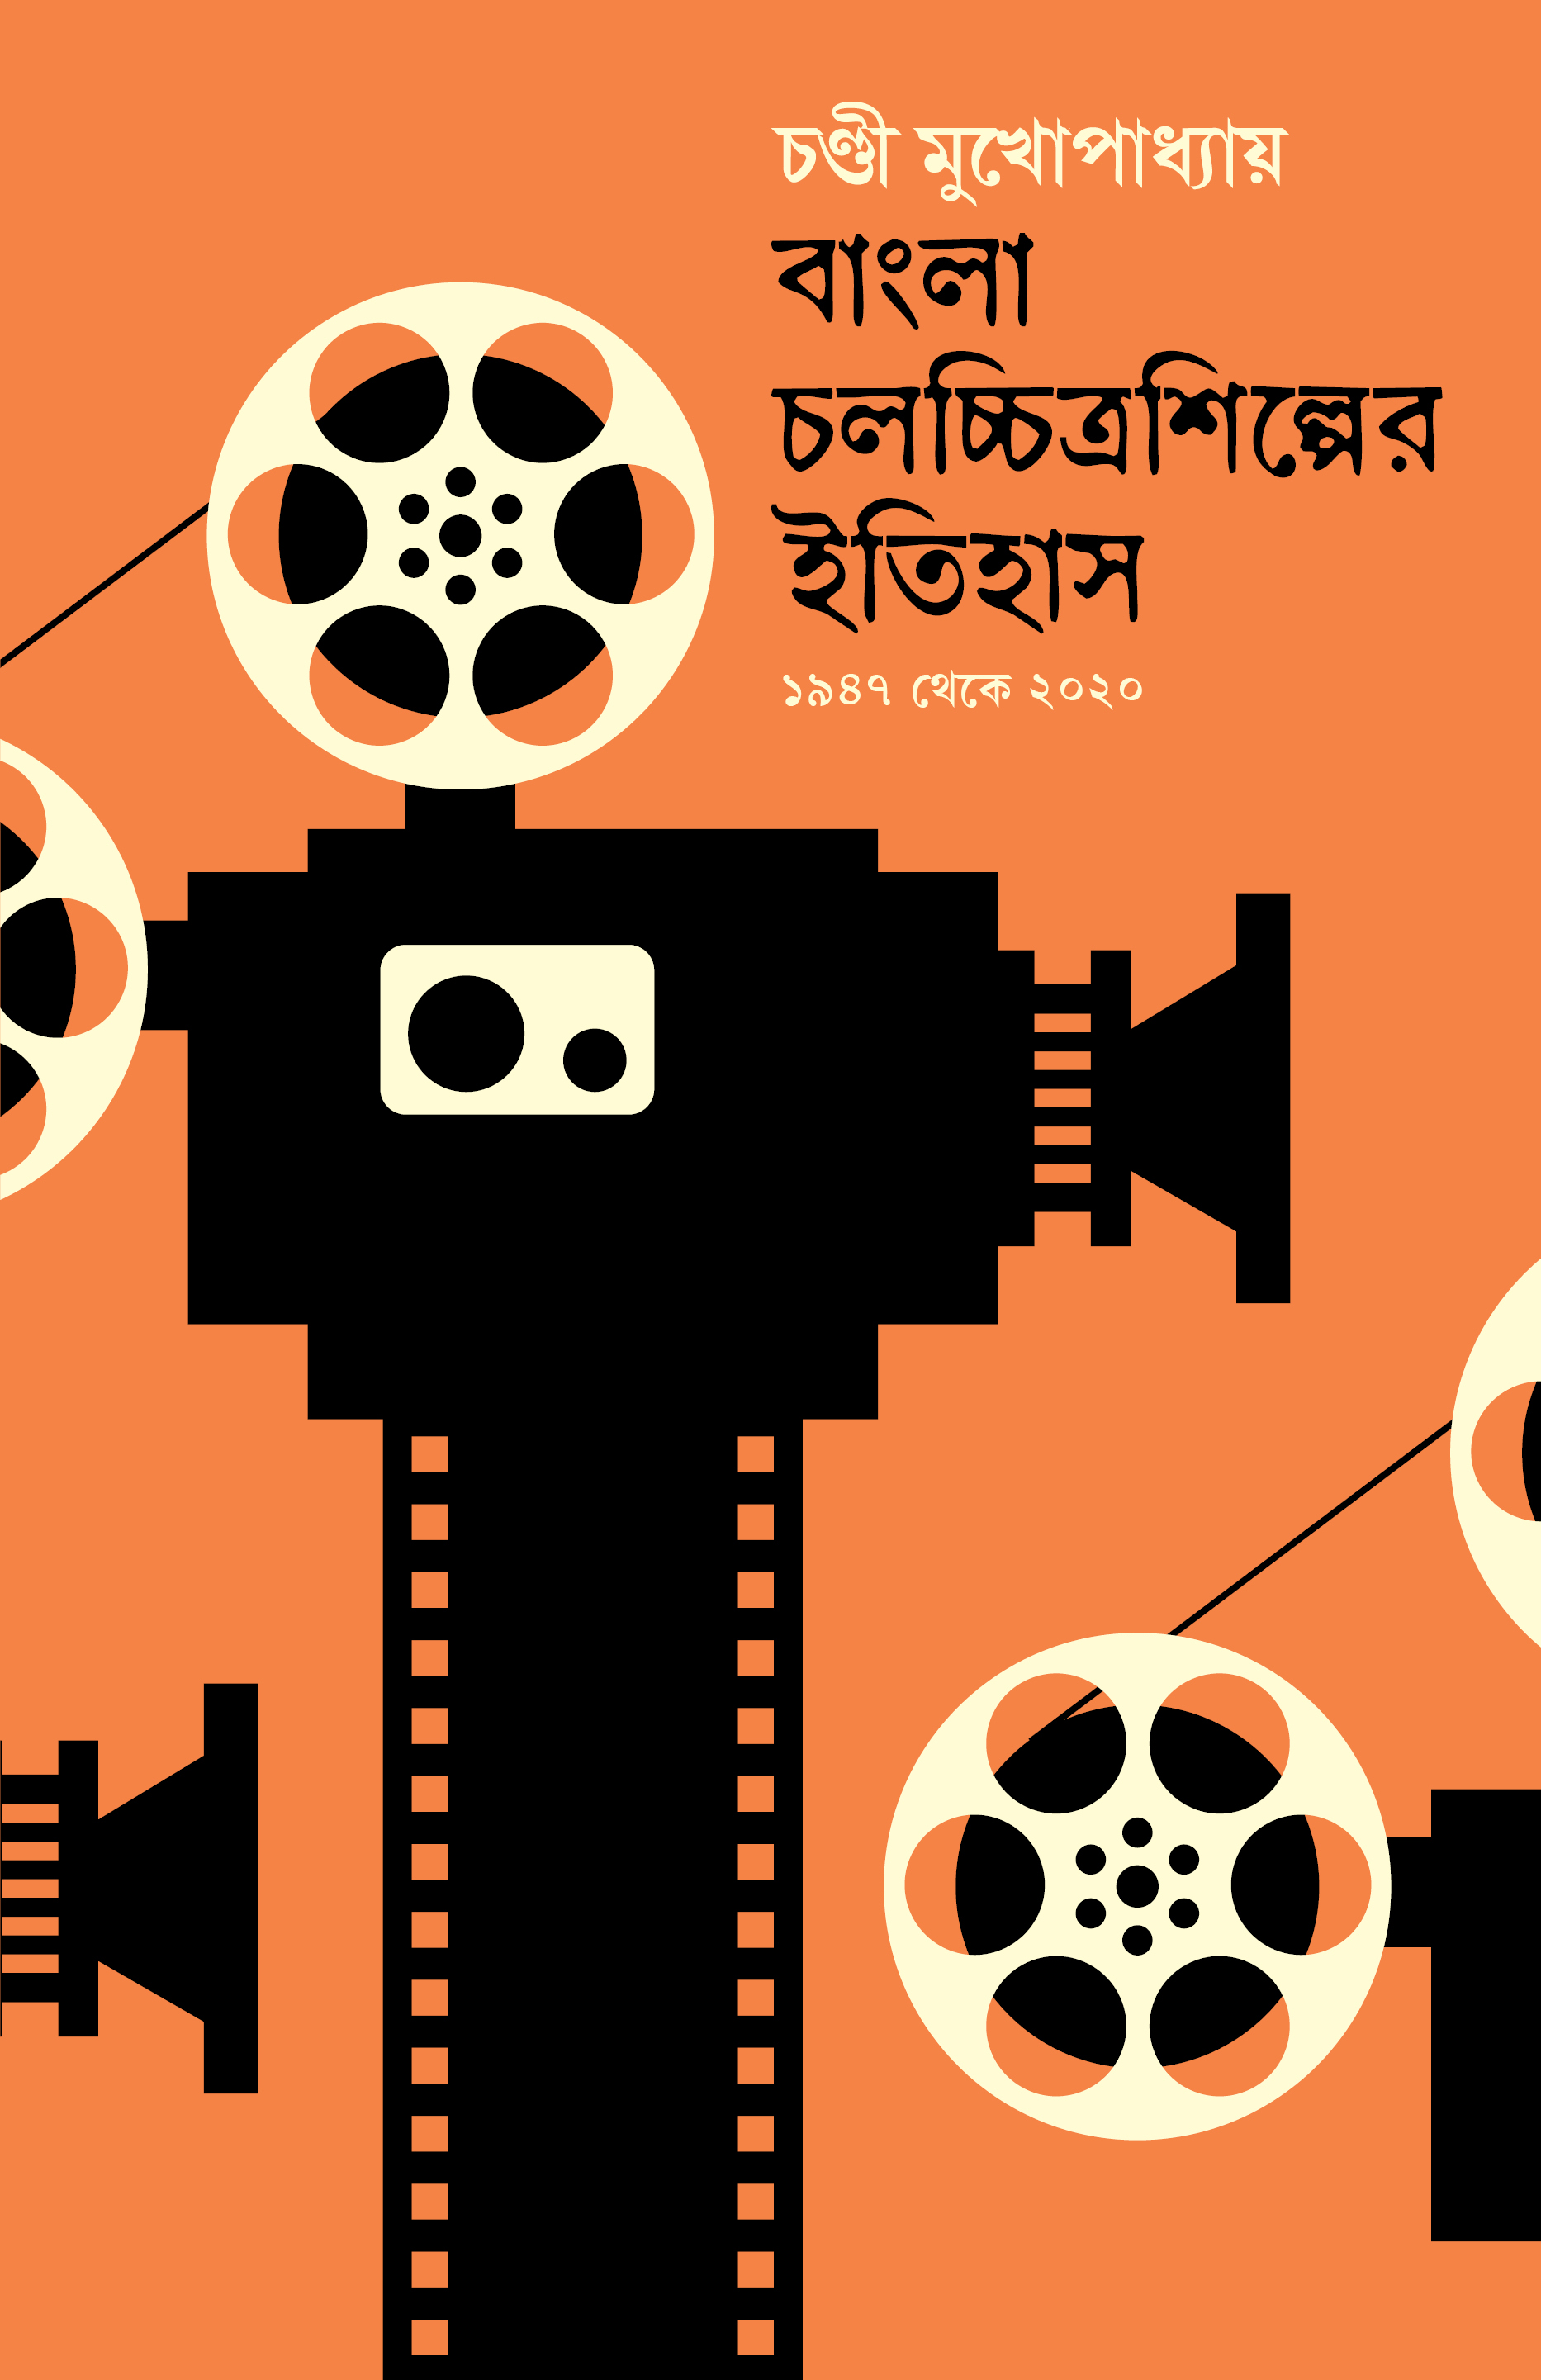 বাংলা চলচ্চিত্র শিল্পের ইতিহাস (হার্ডকভার)